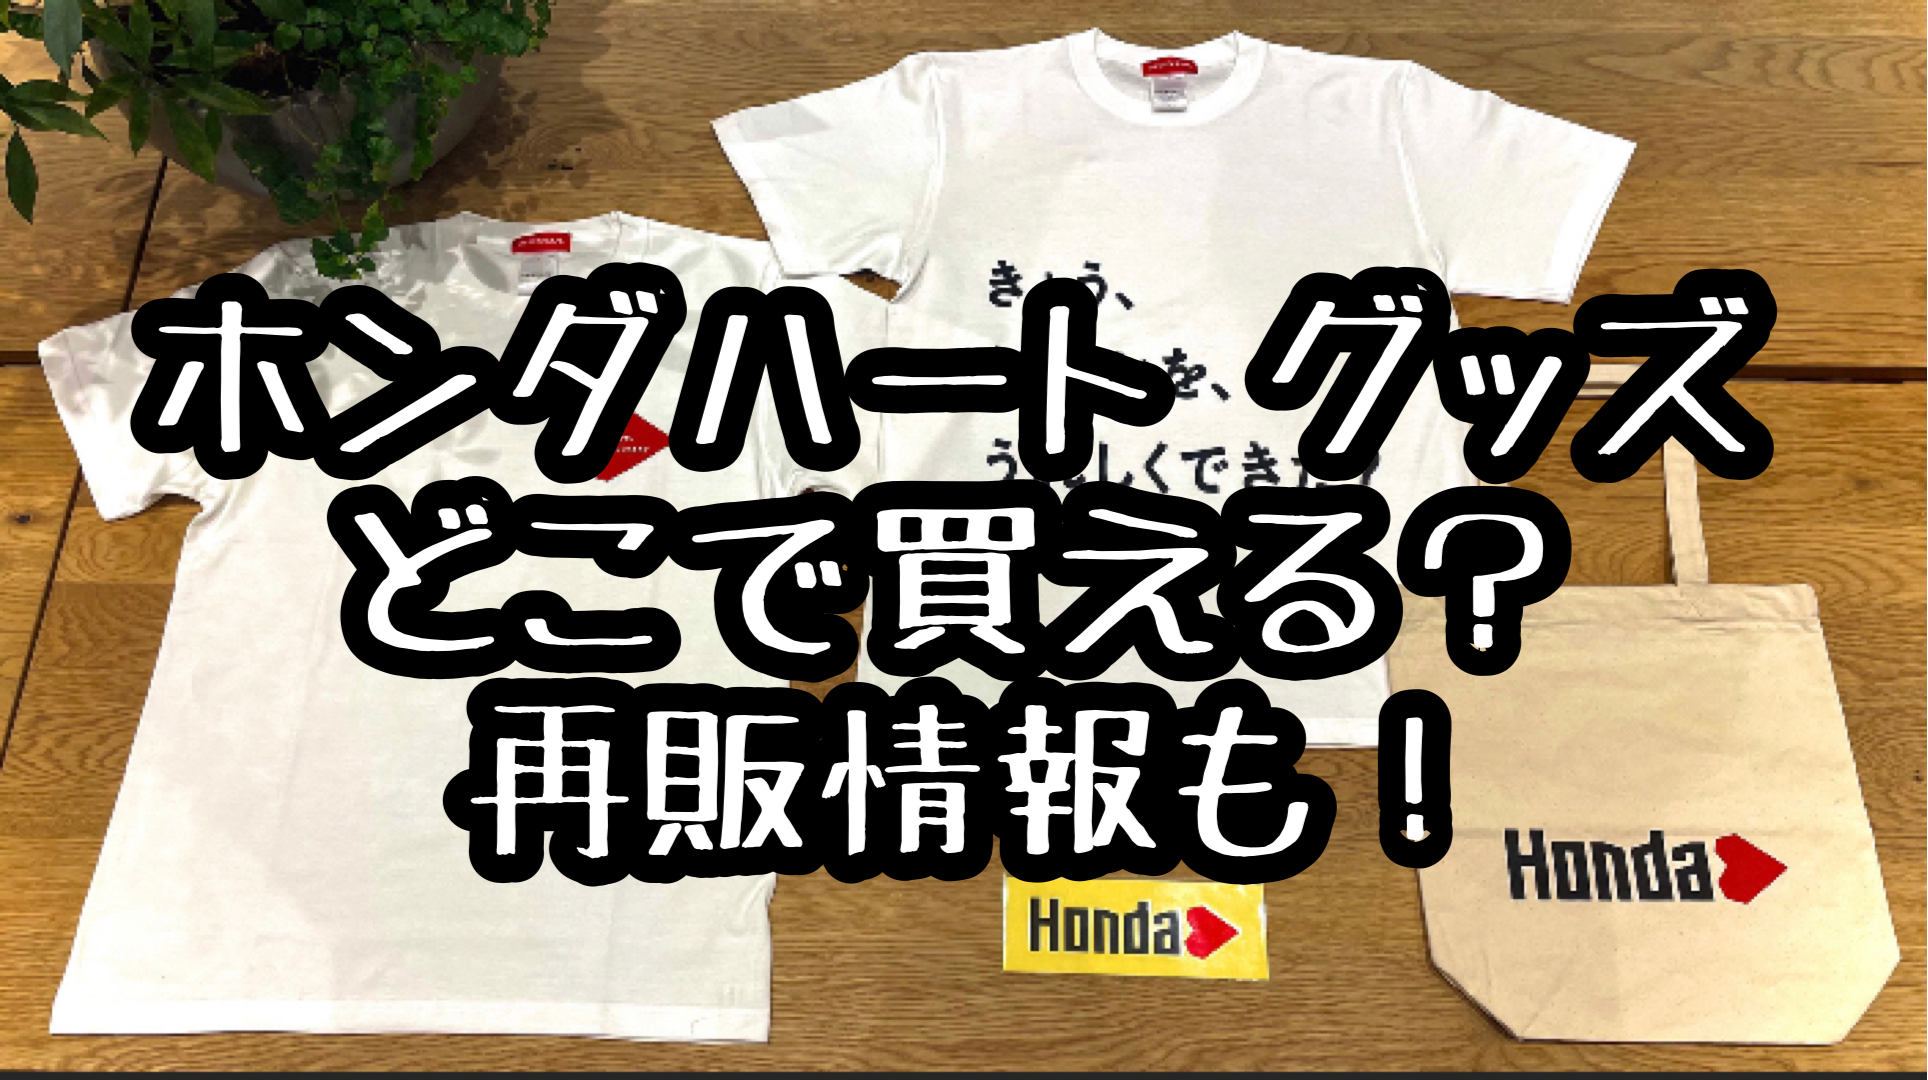 Lサイズ Hondaハート×WIND AND SEA Tシャツ ブラック 国内外の人気が集結 5396円引き swim.main.jp